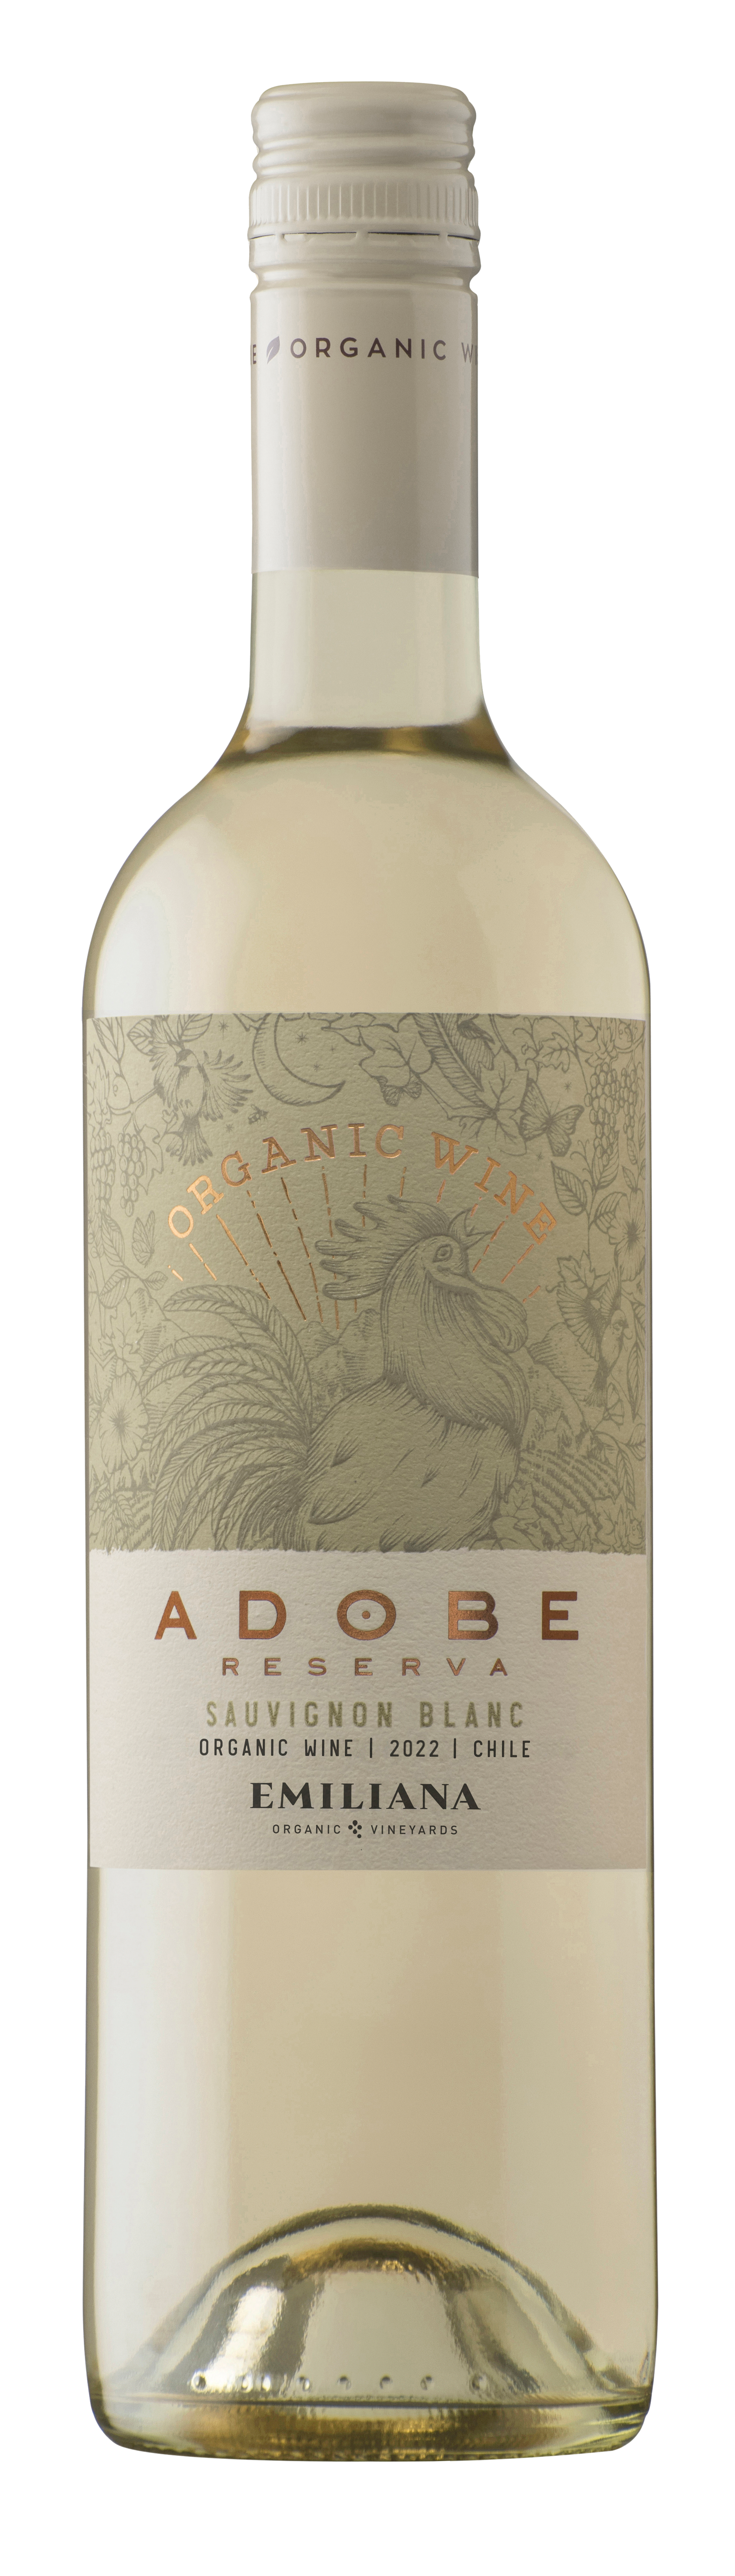 Adobe Sauvignon Blanc